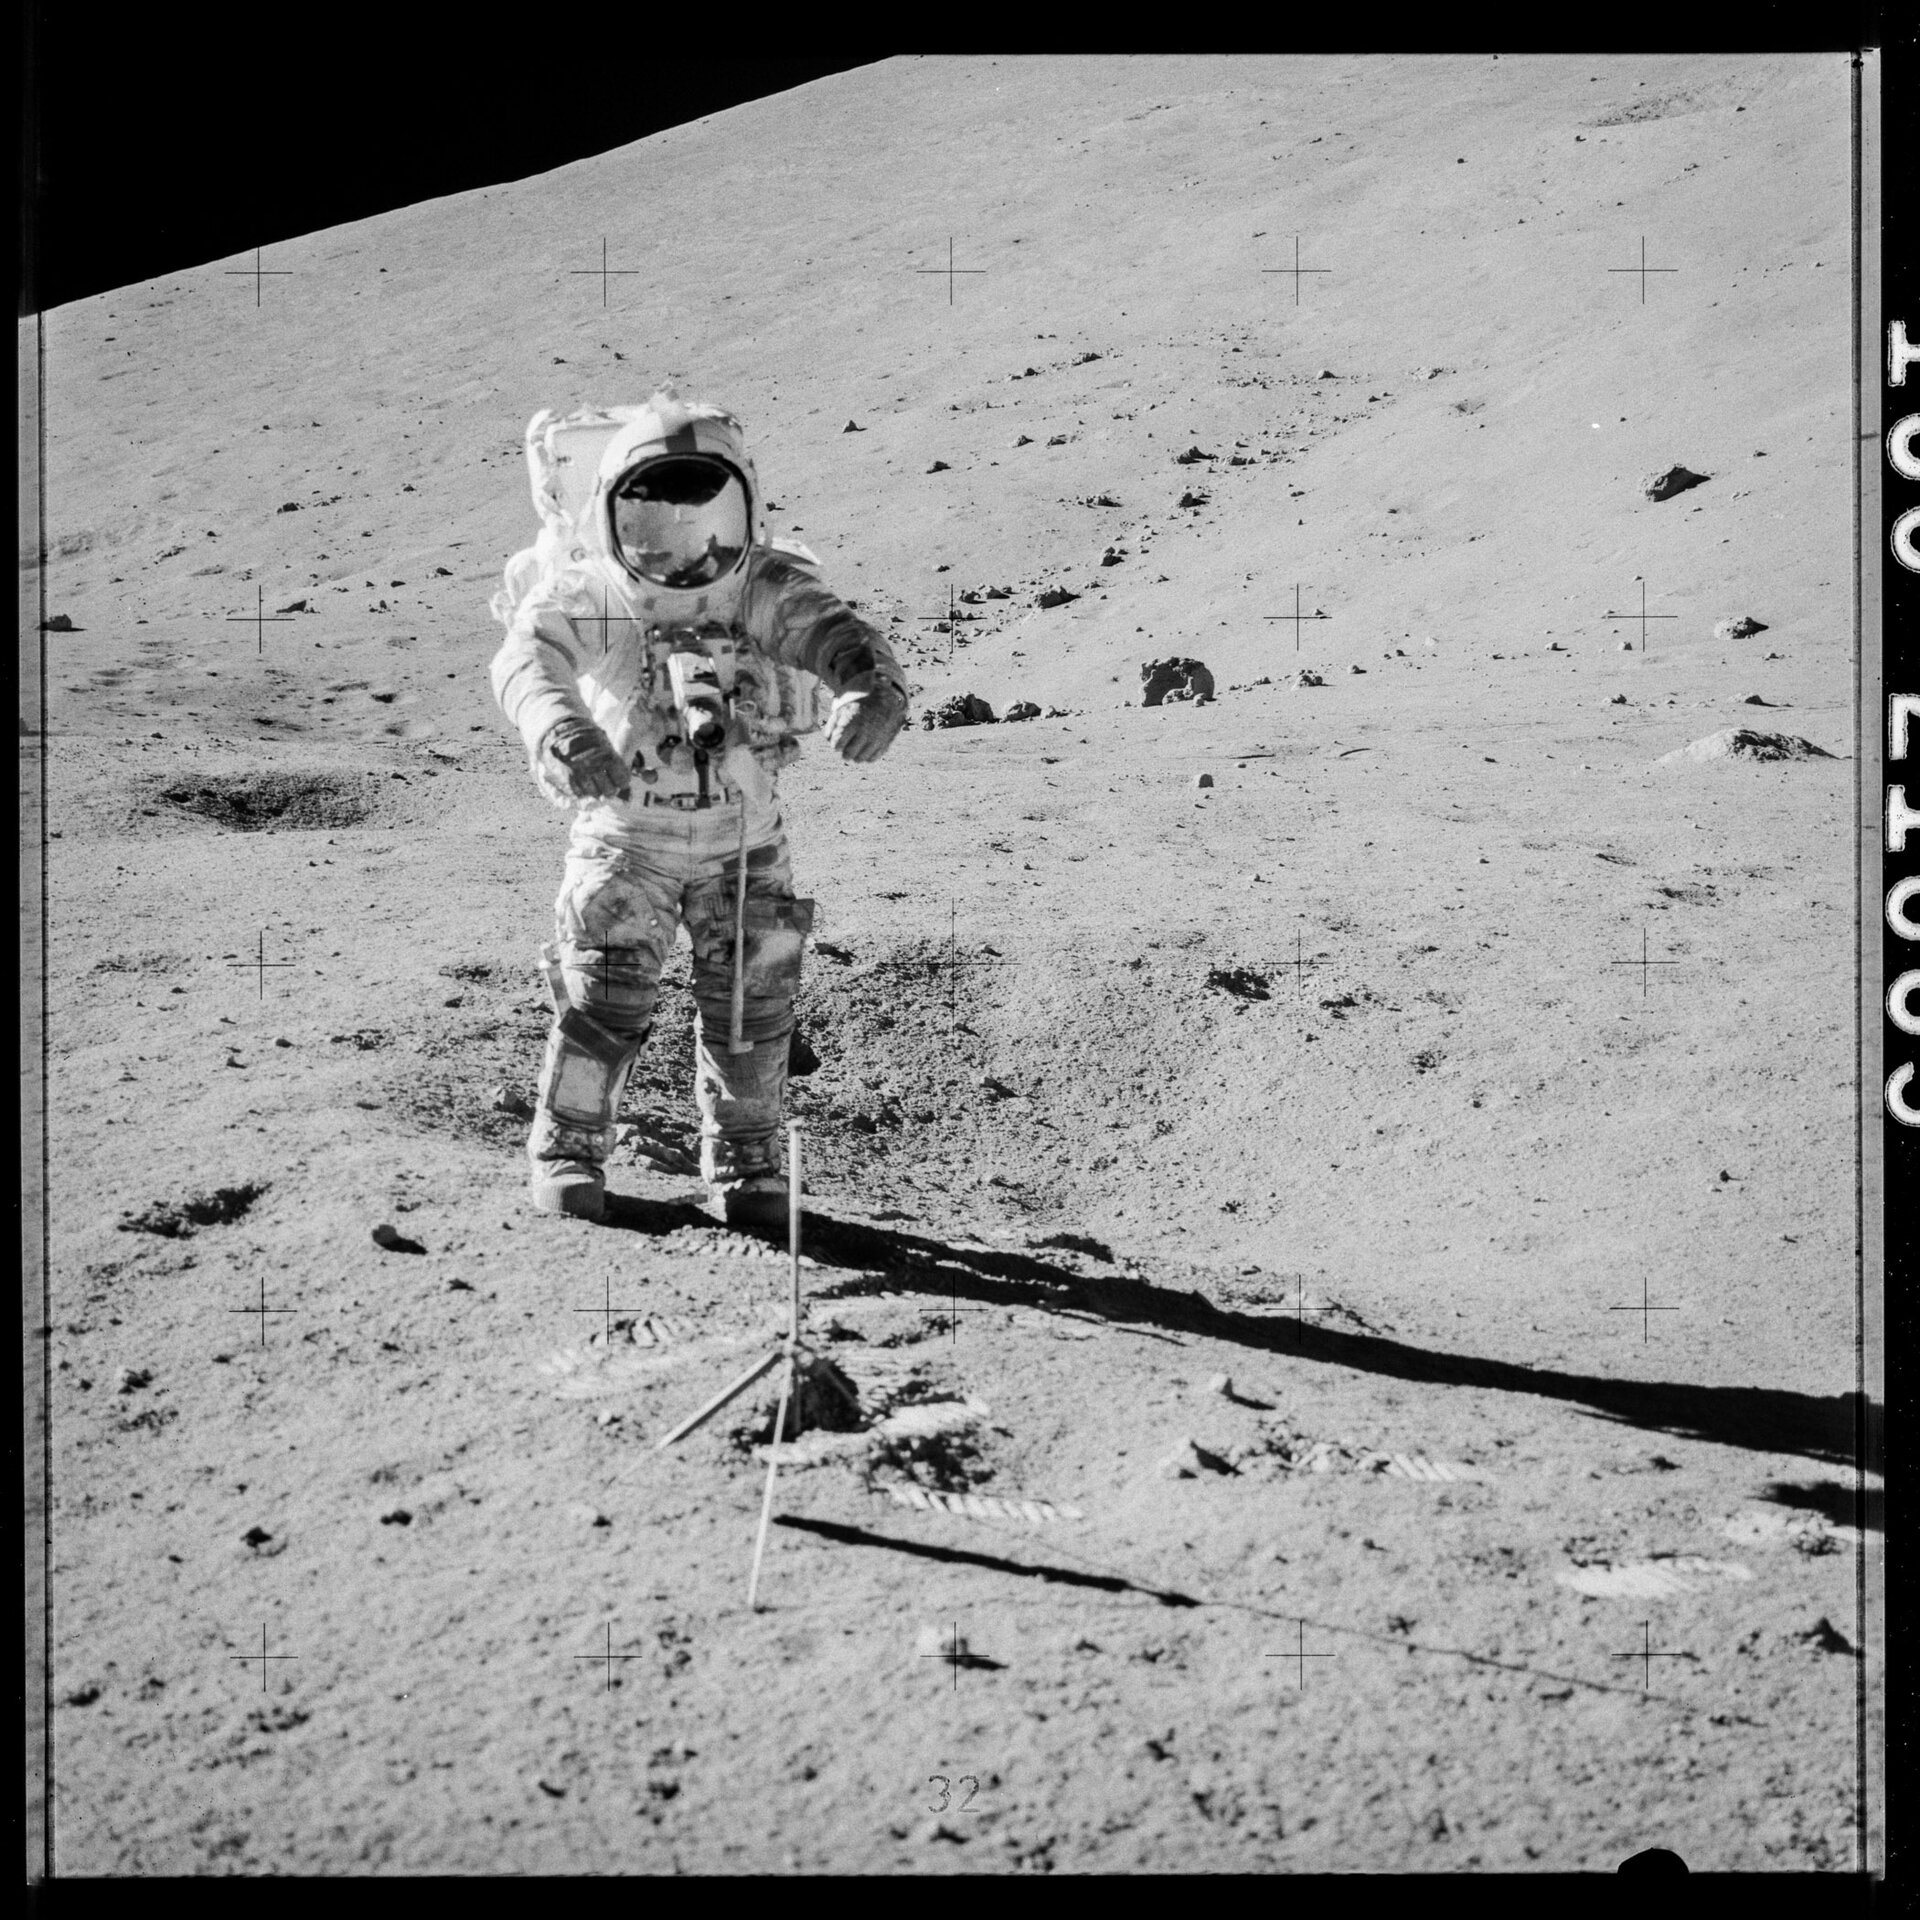 Спустя 50 лет вскроют контейнер с образцом лунного грунта миссии Apollo-17